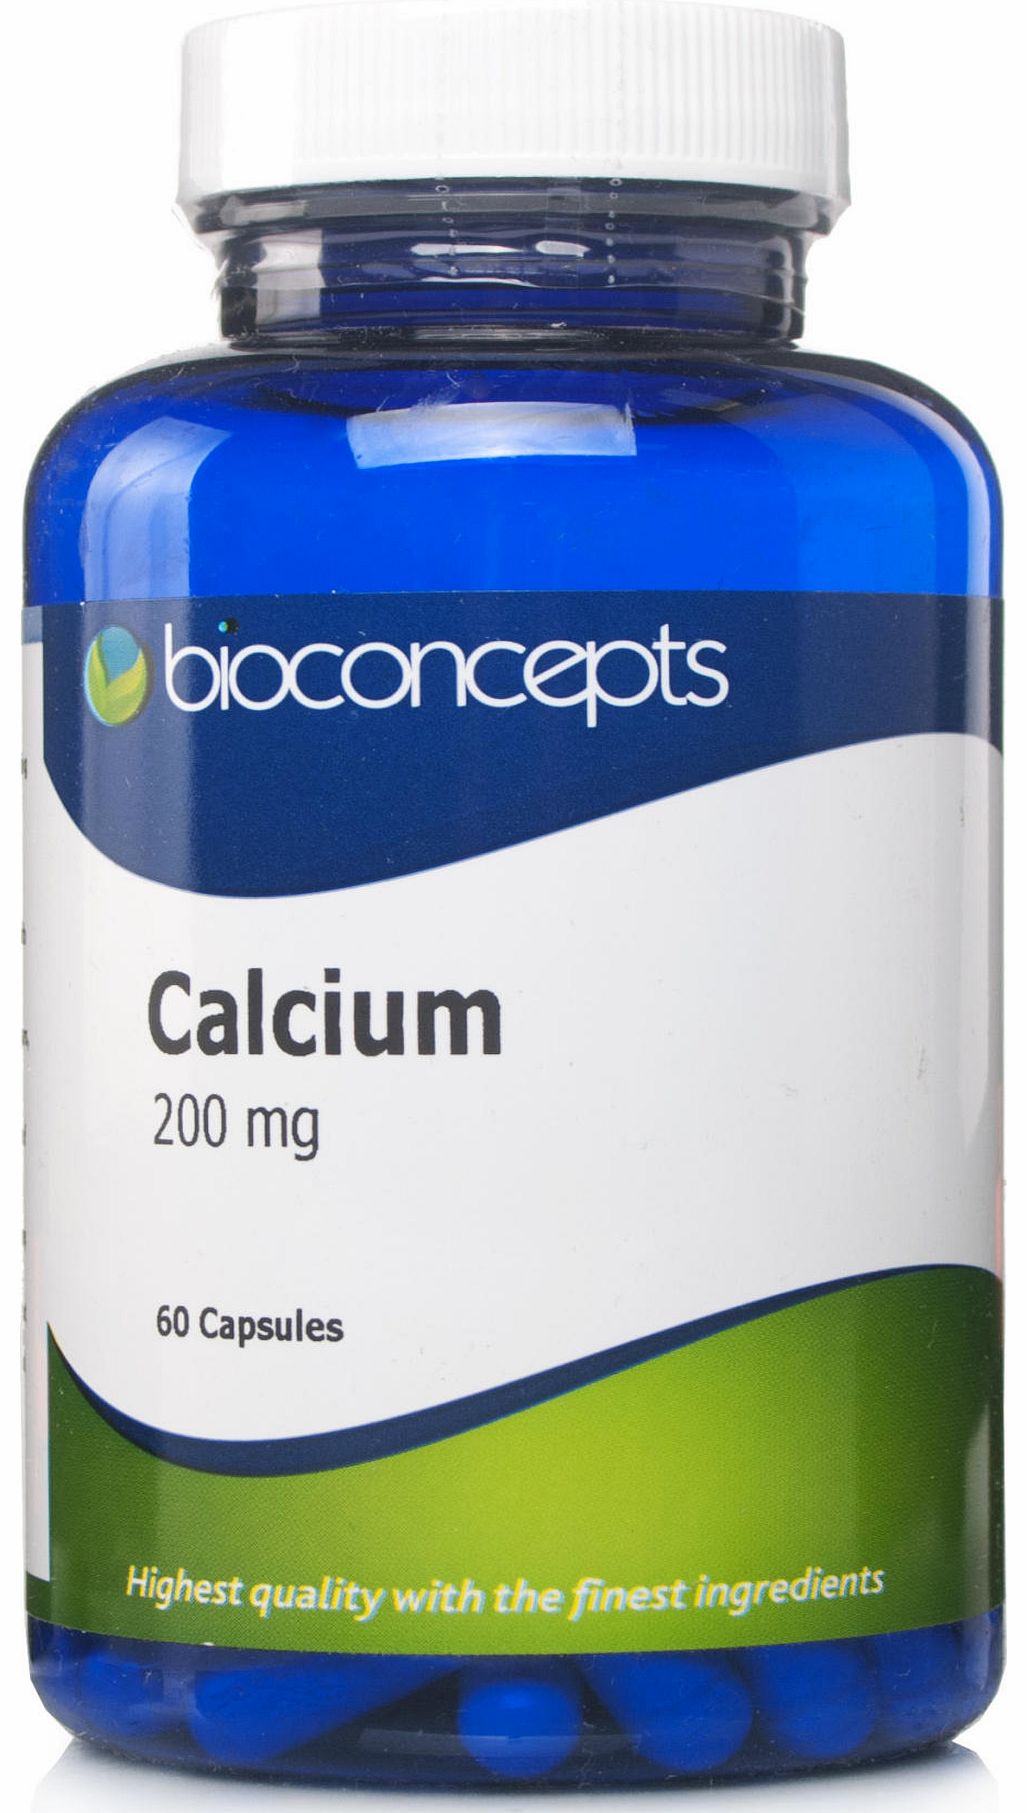 Bioconcepts Calcium 200mg